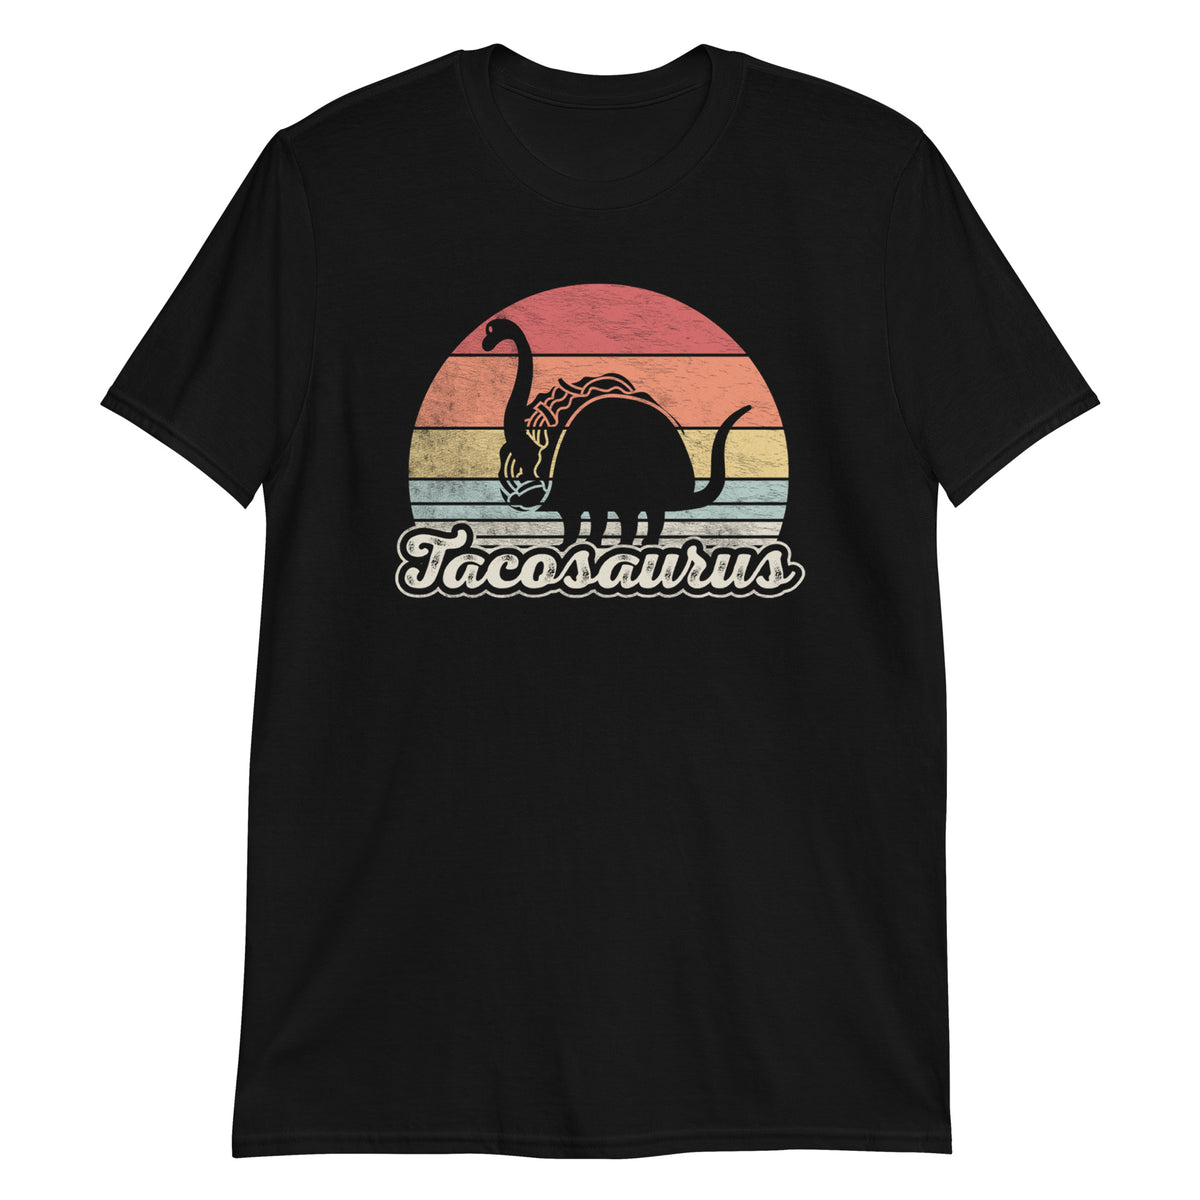 Tacosaurus  T-Shirt